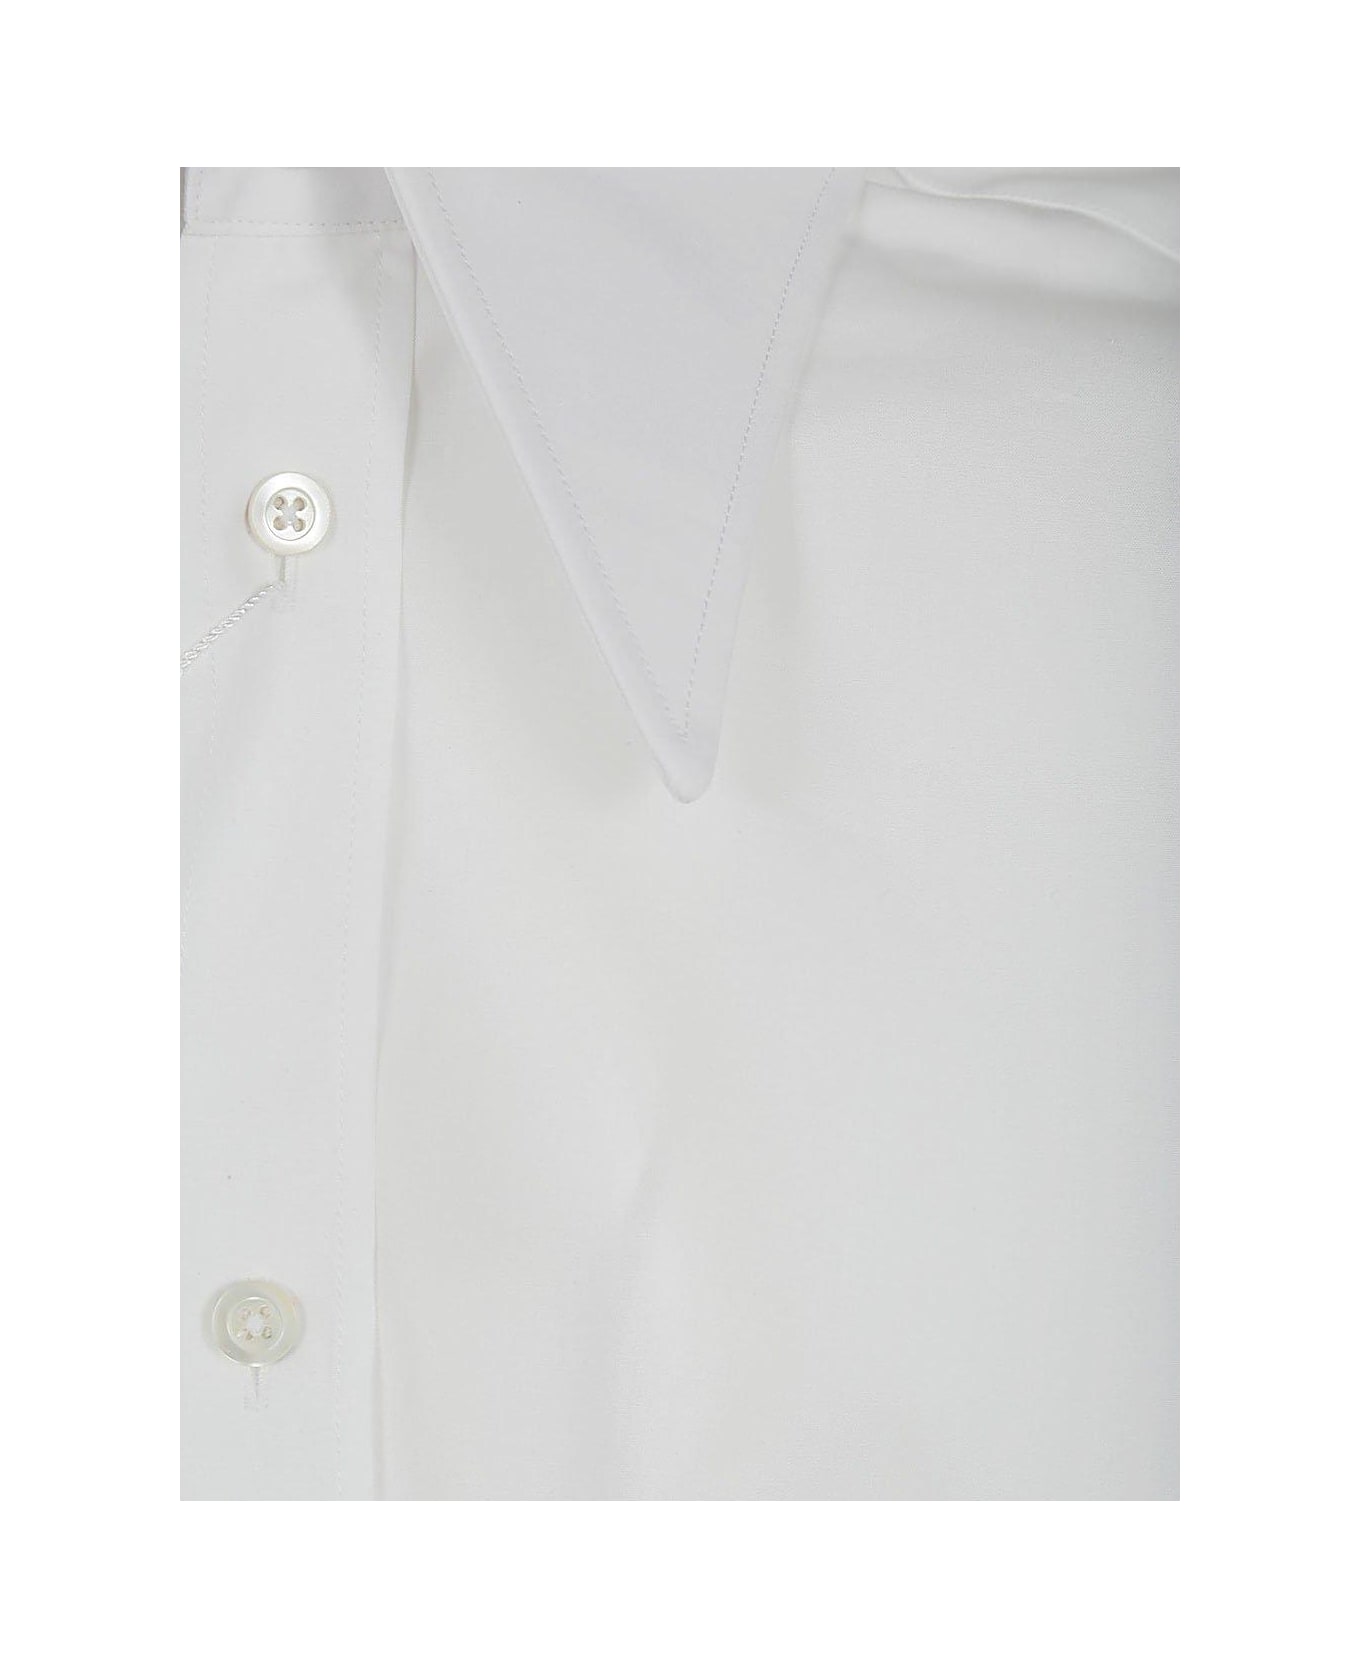 Maison Margiela Short-sleeved Shirt - White シャツ